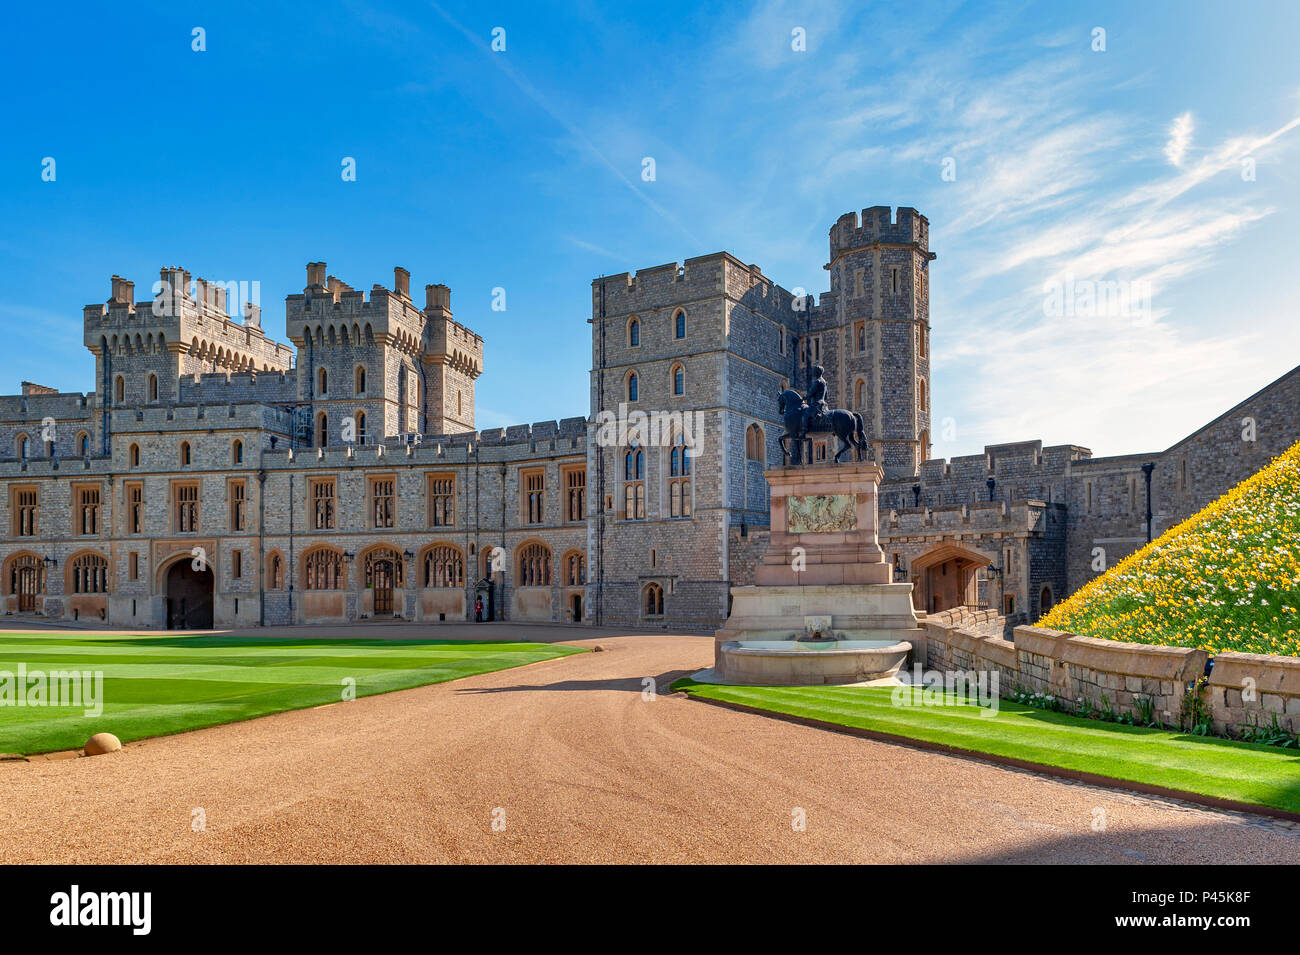 Il gruppo di edifici con il re Carlo II Statua in alto Ward e il quadrangolo del Castello di Windsor, una residenza reale a Windsor in Regno Unito Foto Stock